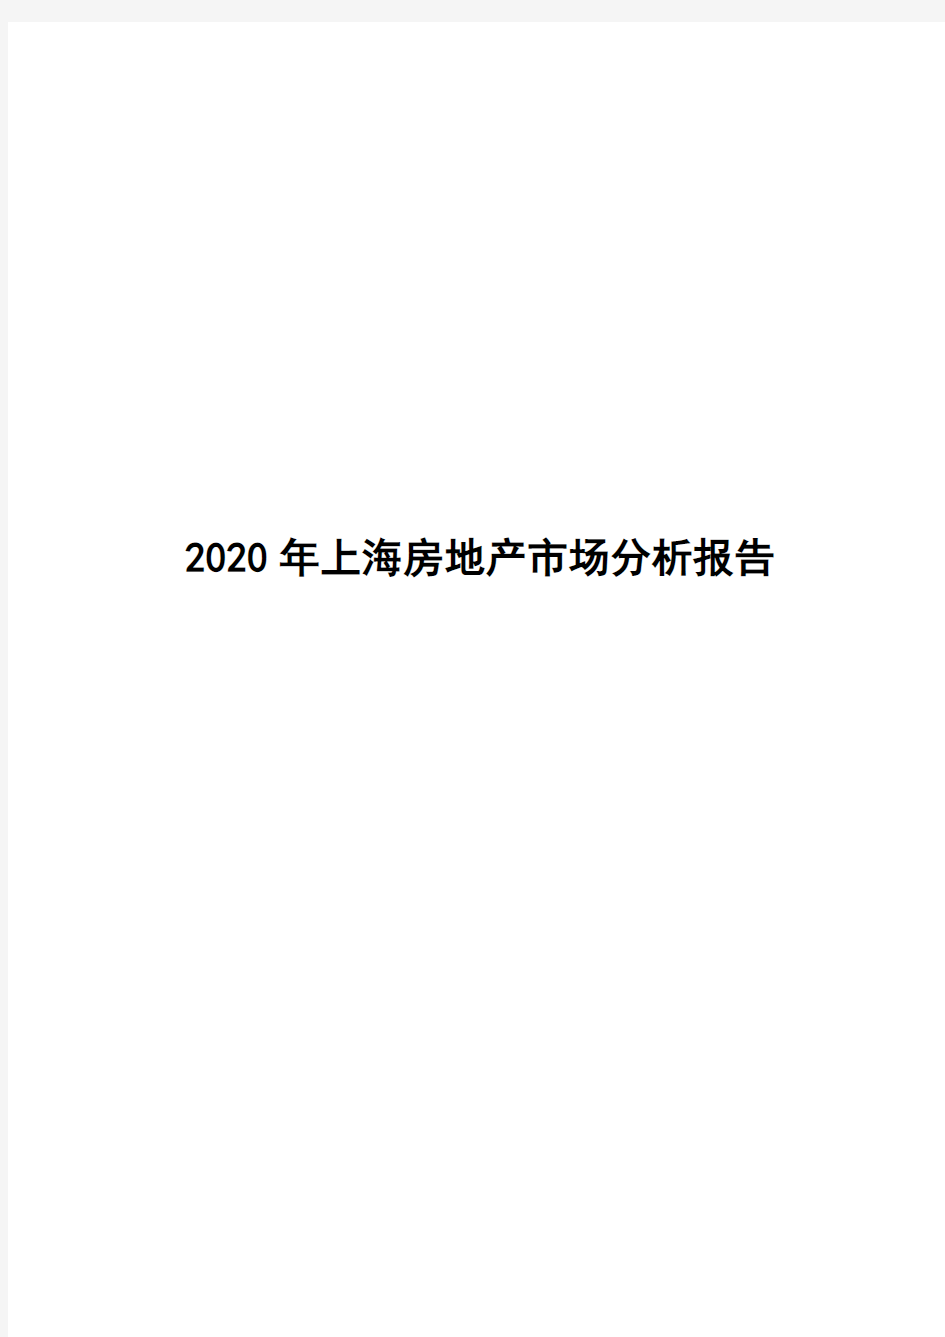 2020年上海房地产市场分析报告